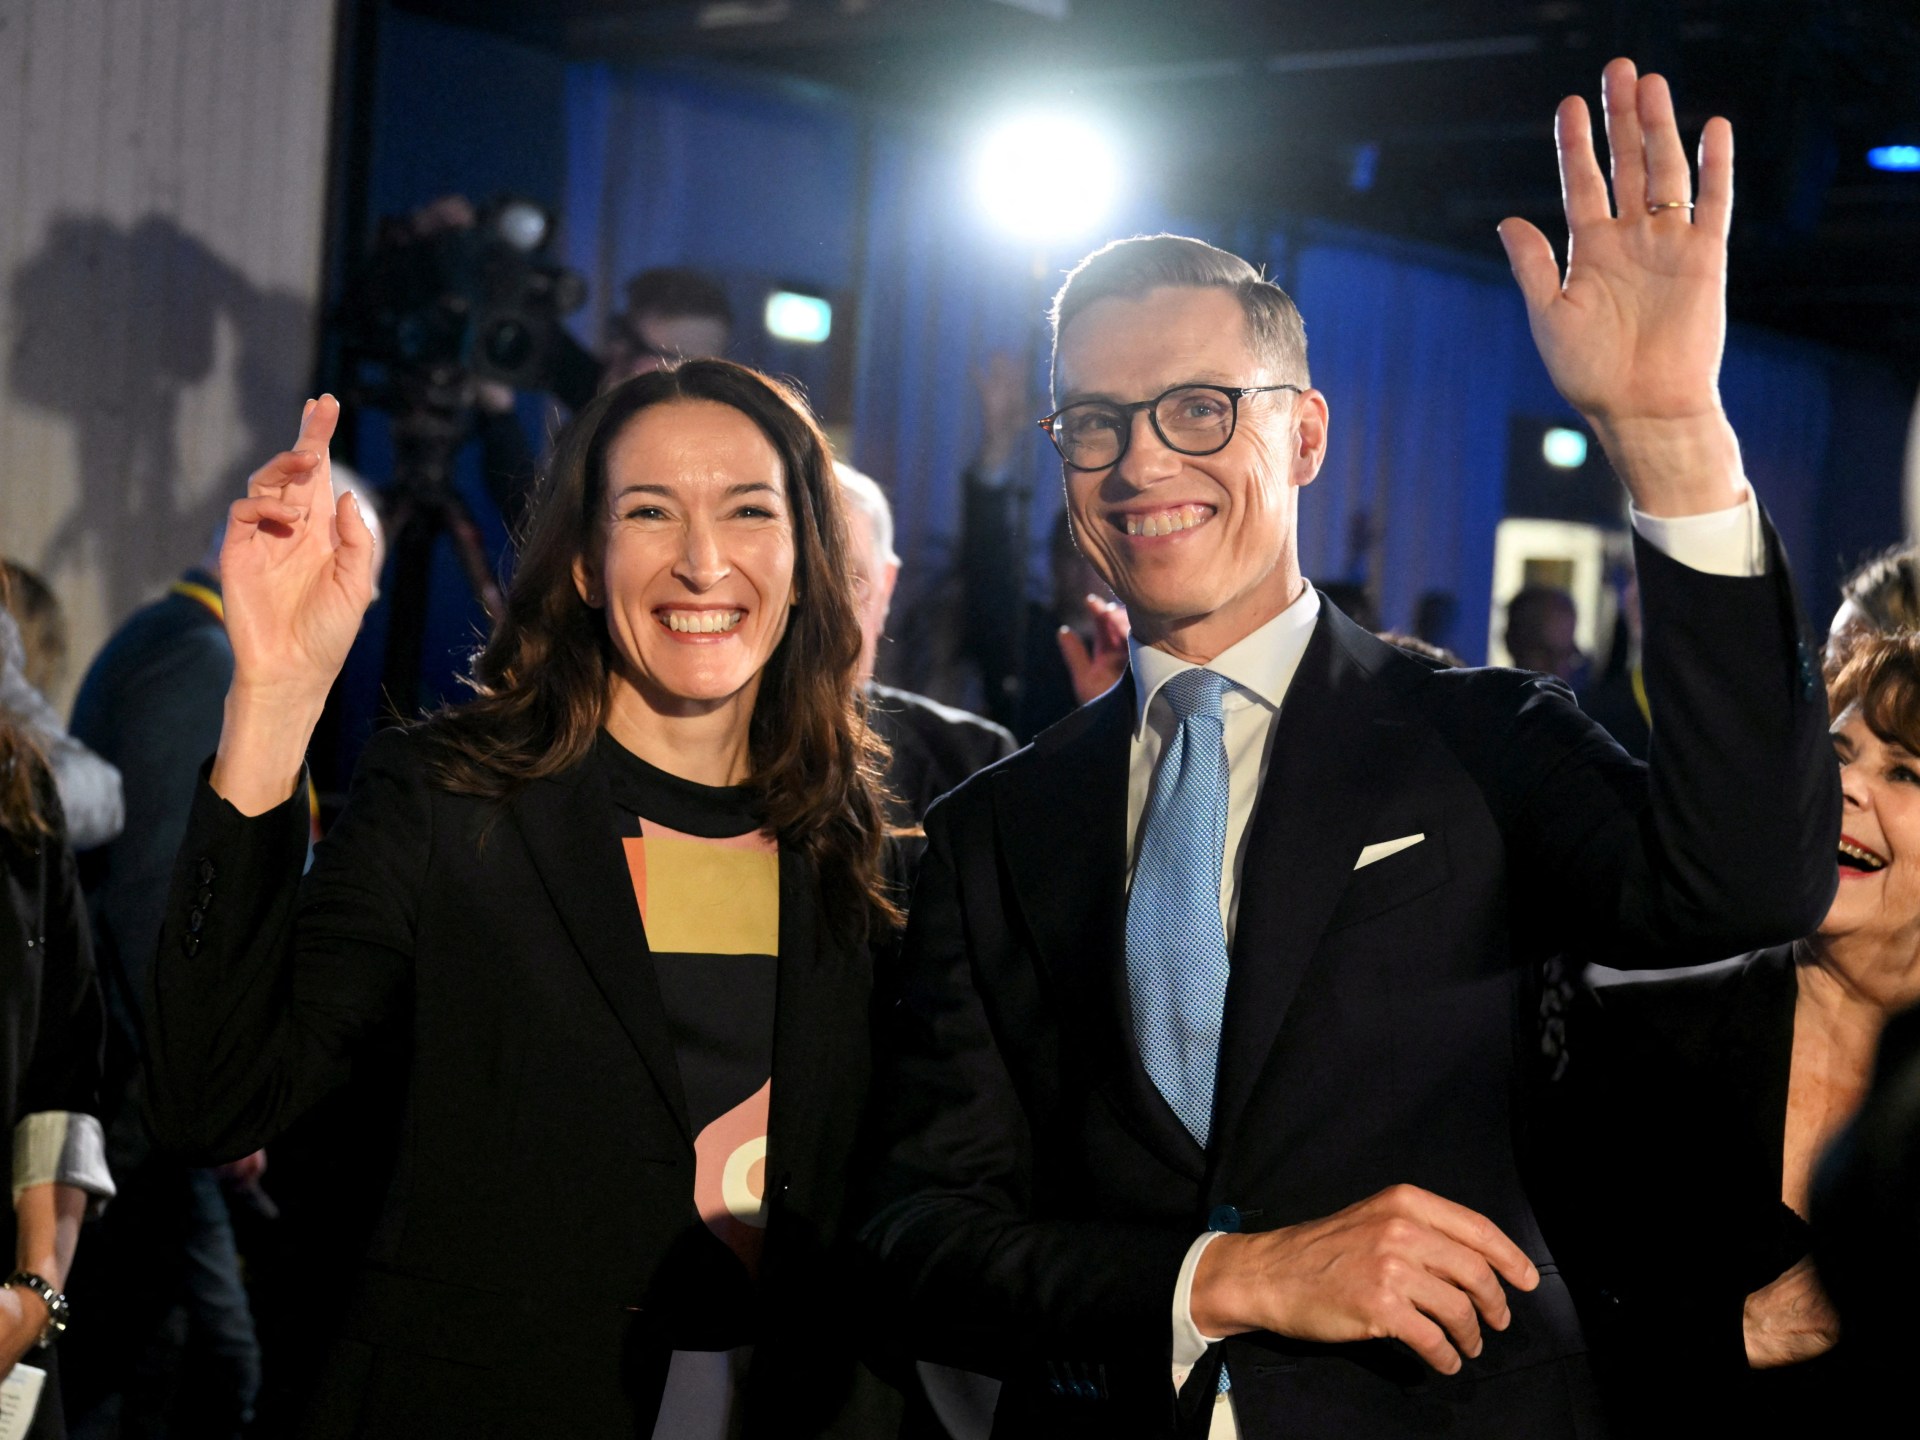 Staub o włos wygrywa pierwszą turę wyborów prezydenckich w Finlandii |  Wiadomości wyborcze